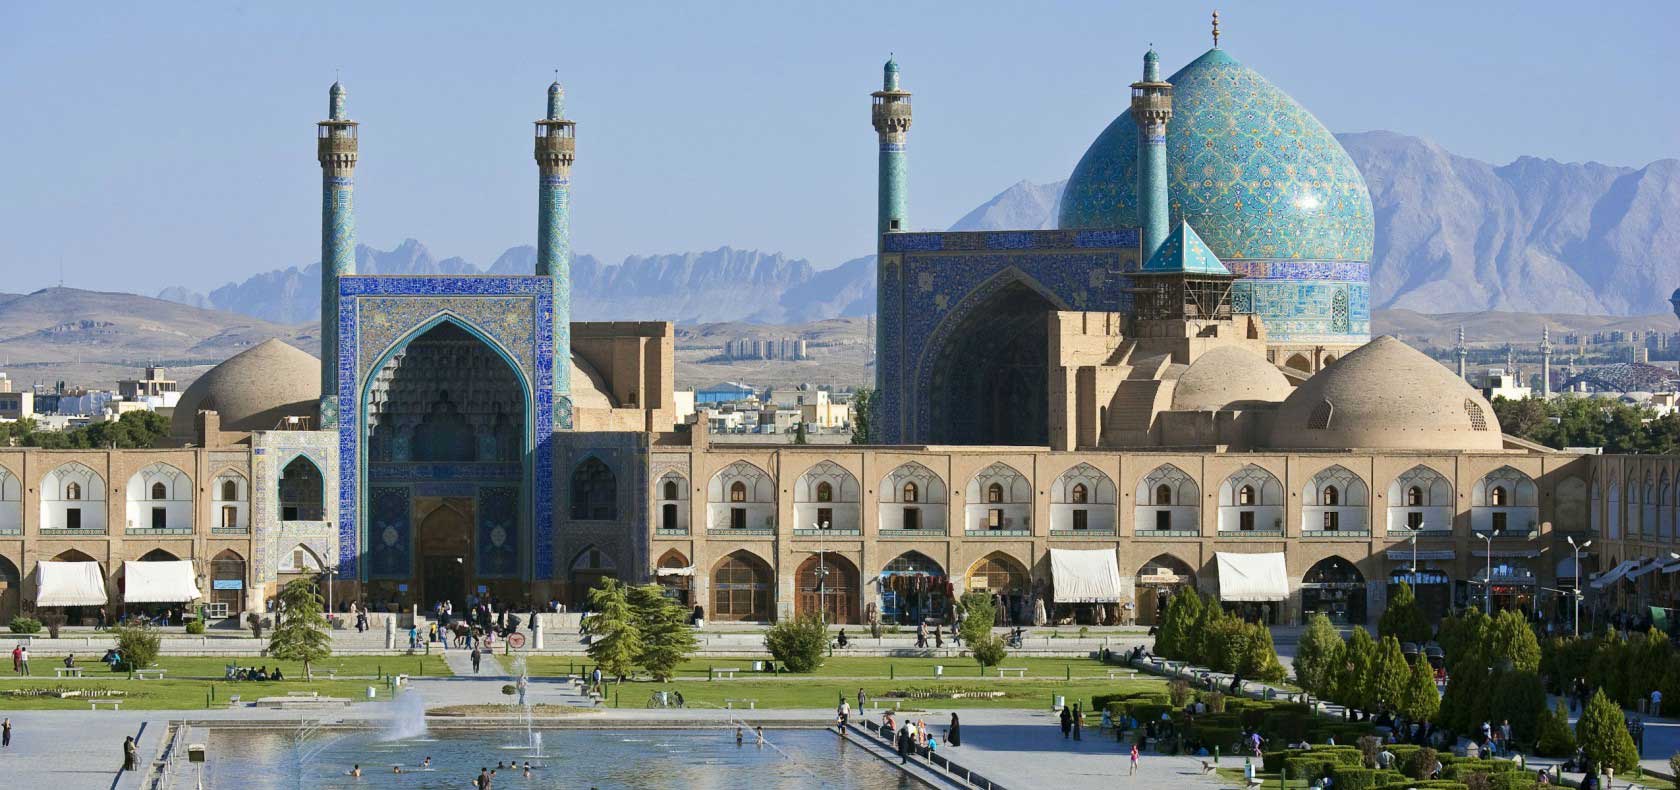 إطلالة على مسجد الإمام من ساحة نقش جهان في أصفهان